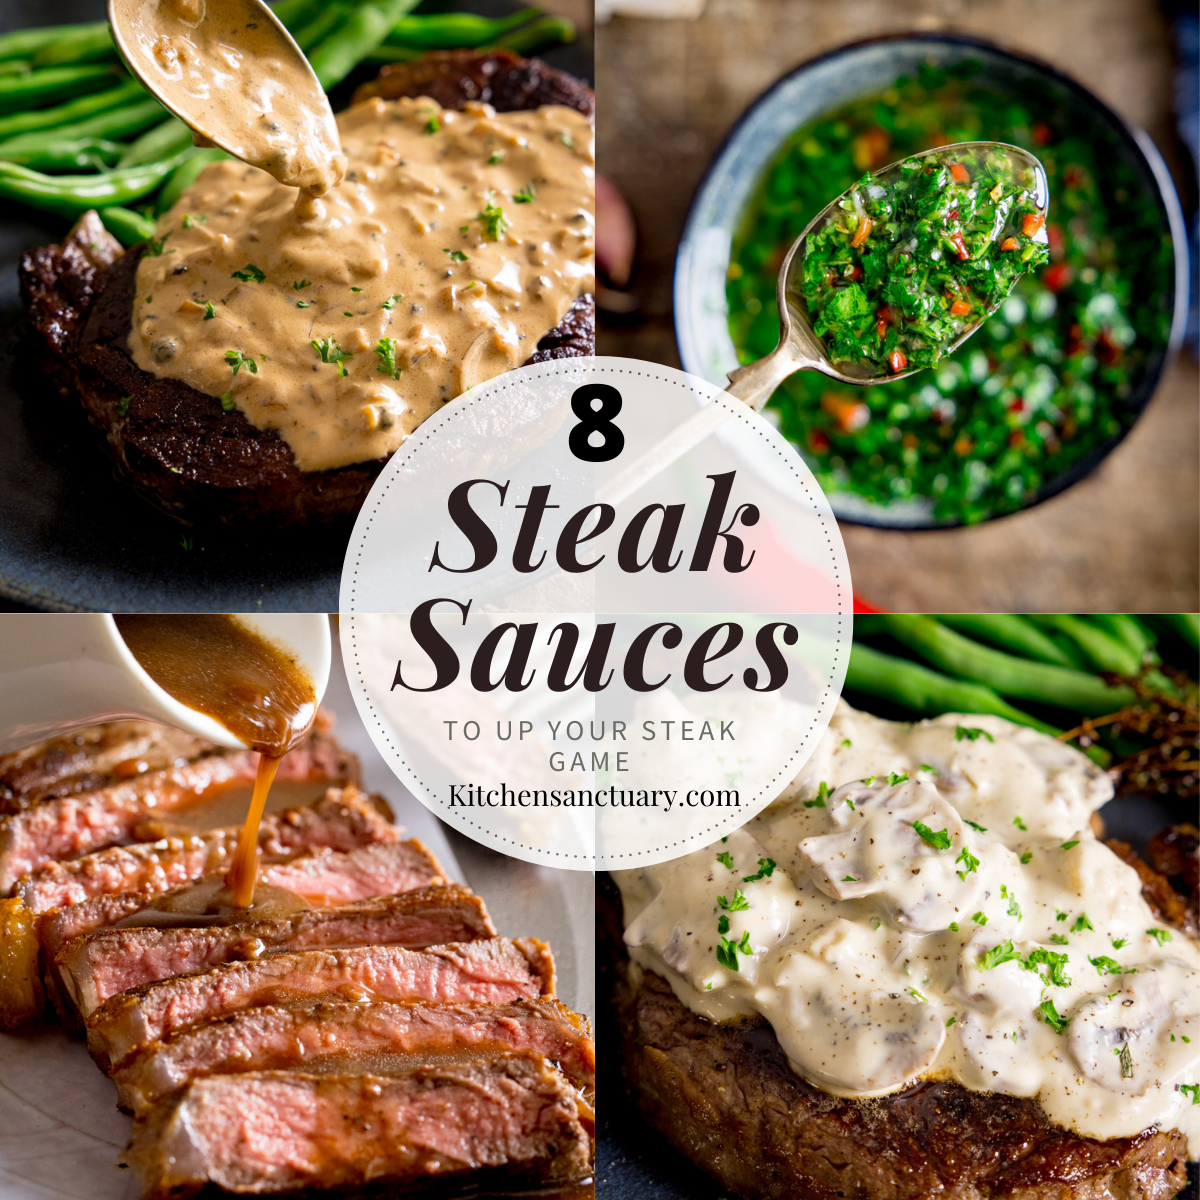 https://www.kitchensanctuary.com/wp-content/uploads/2021/10/Steak-Sauces-collage.webp